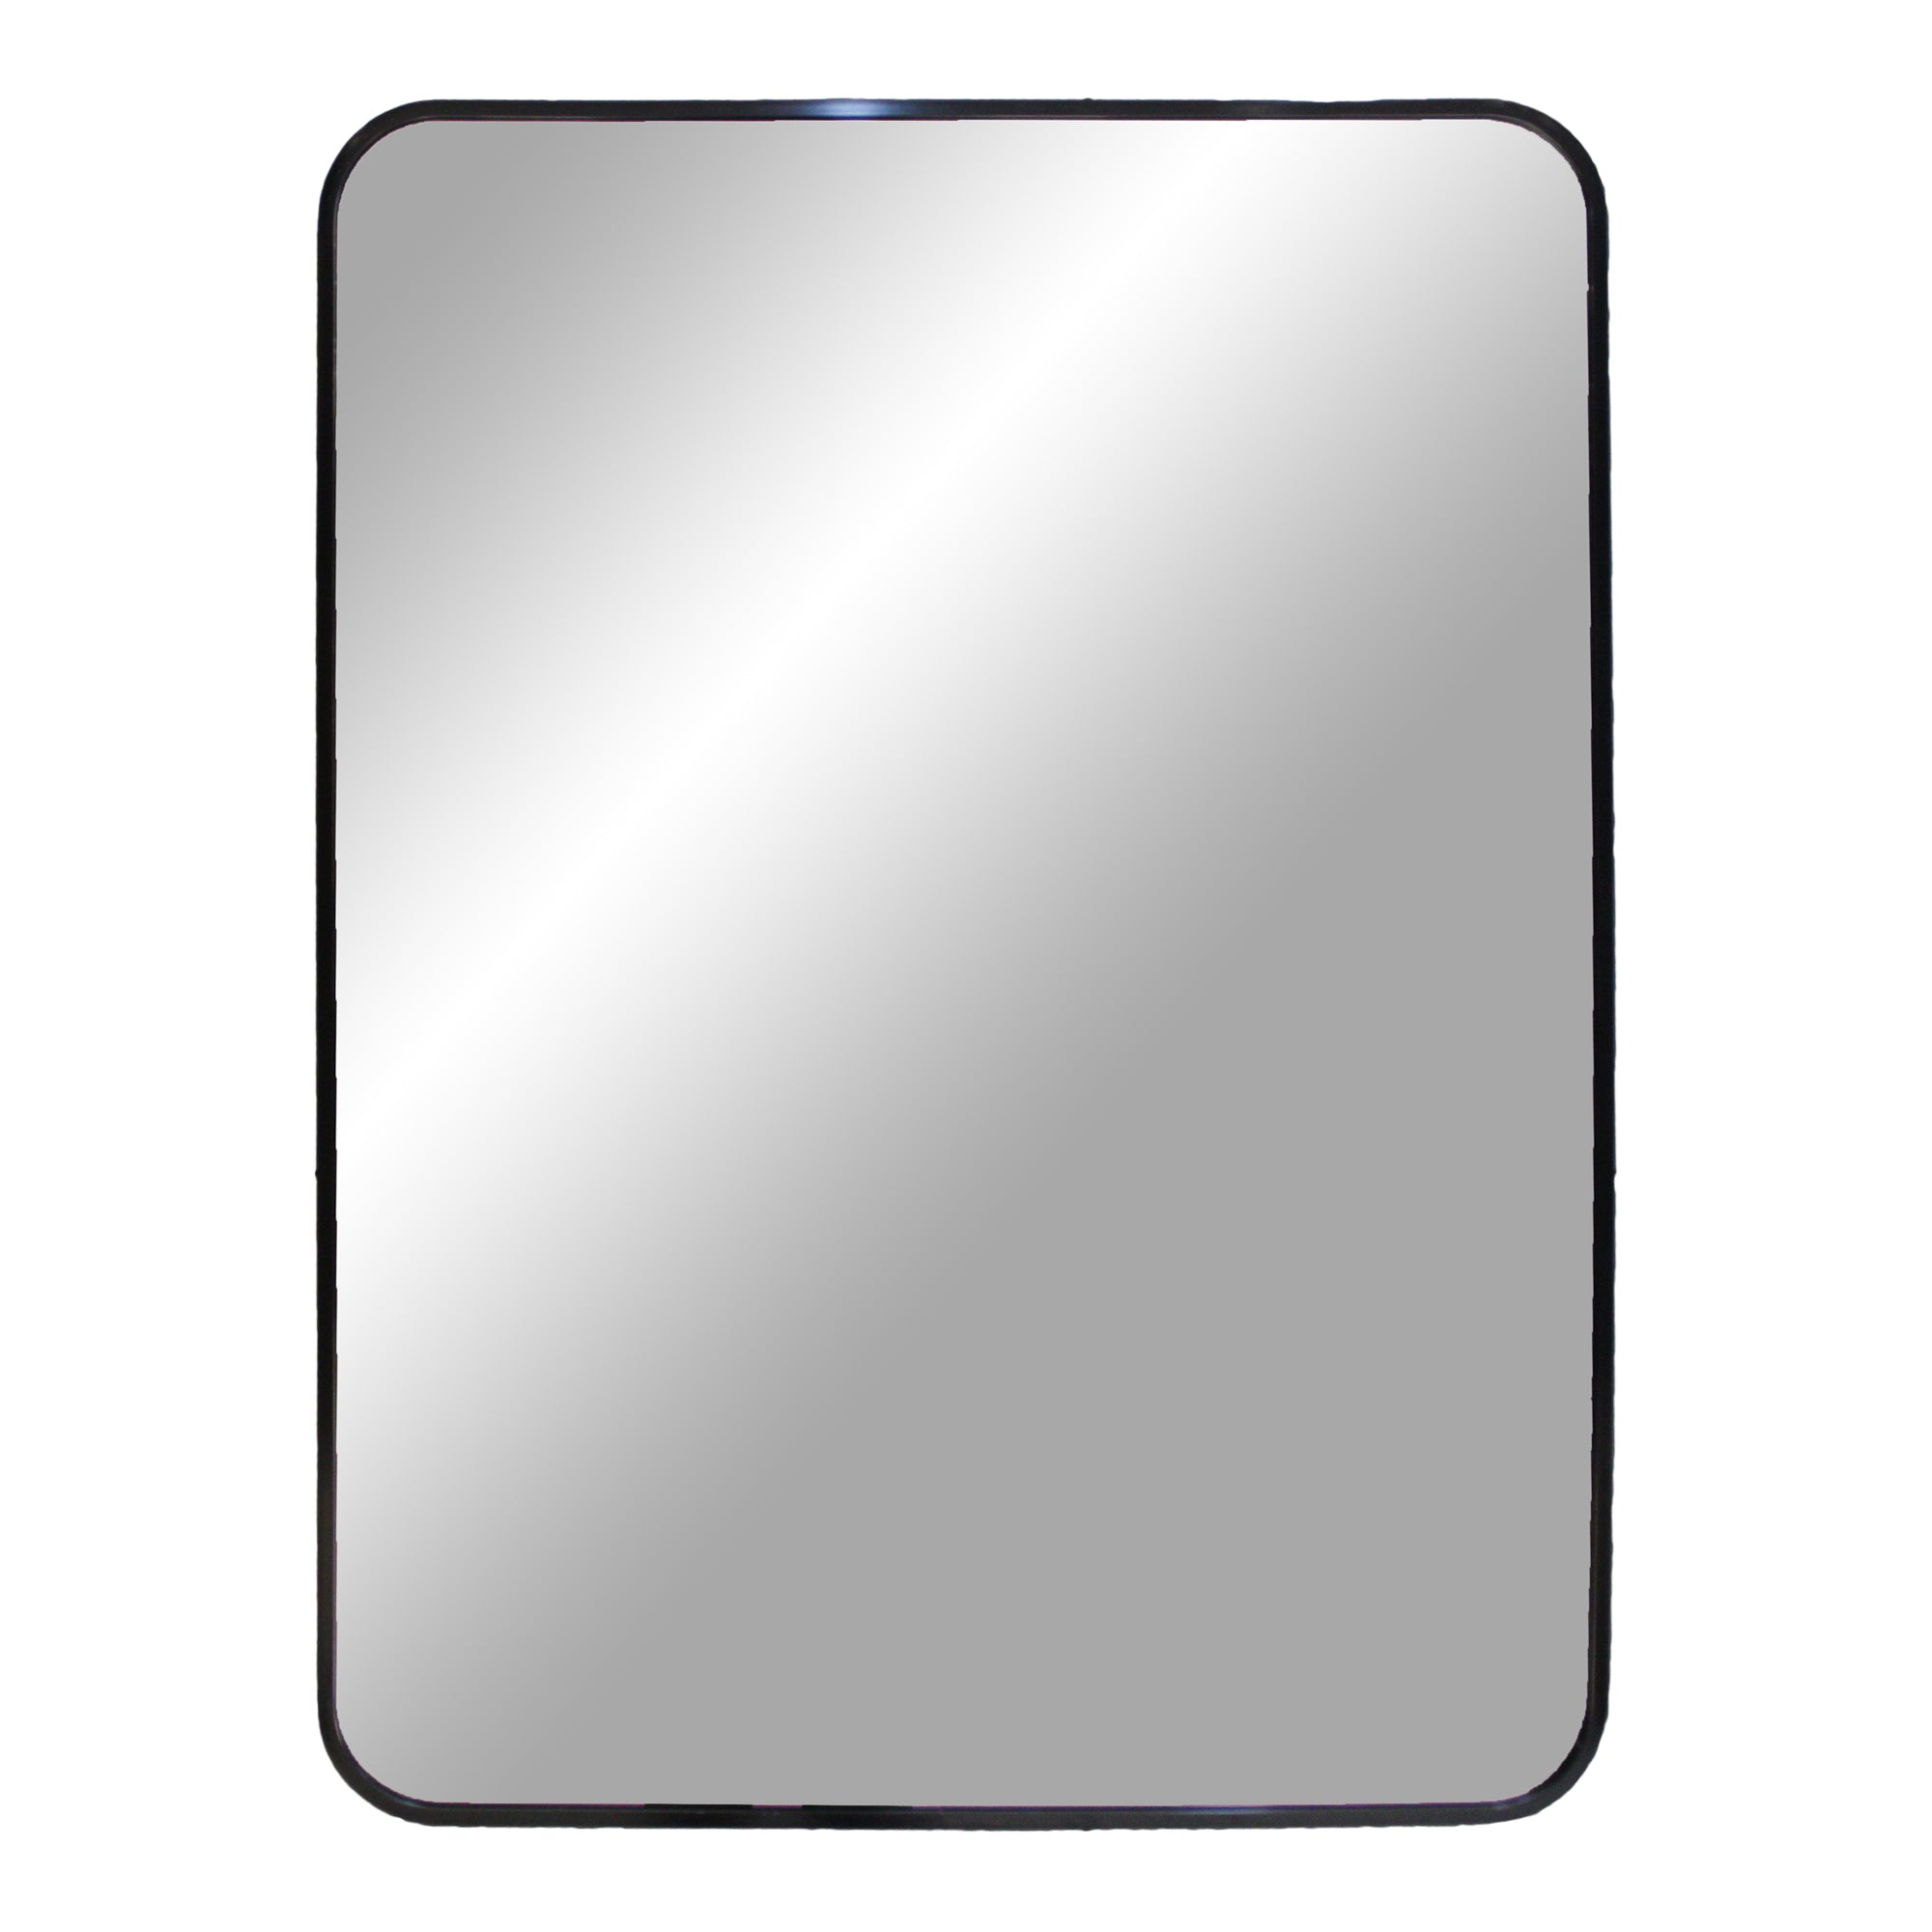 Billede af Madrid Spejl - Spejl i aluminium, sort, 50x70 cm